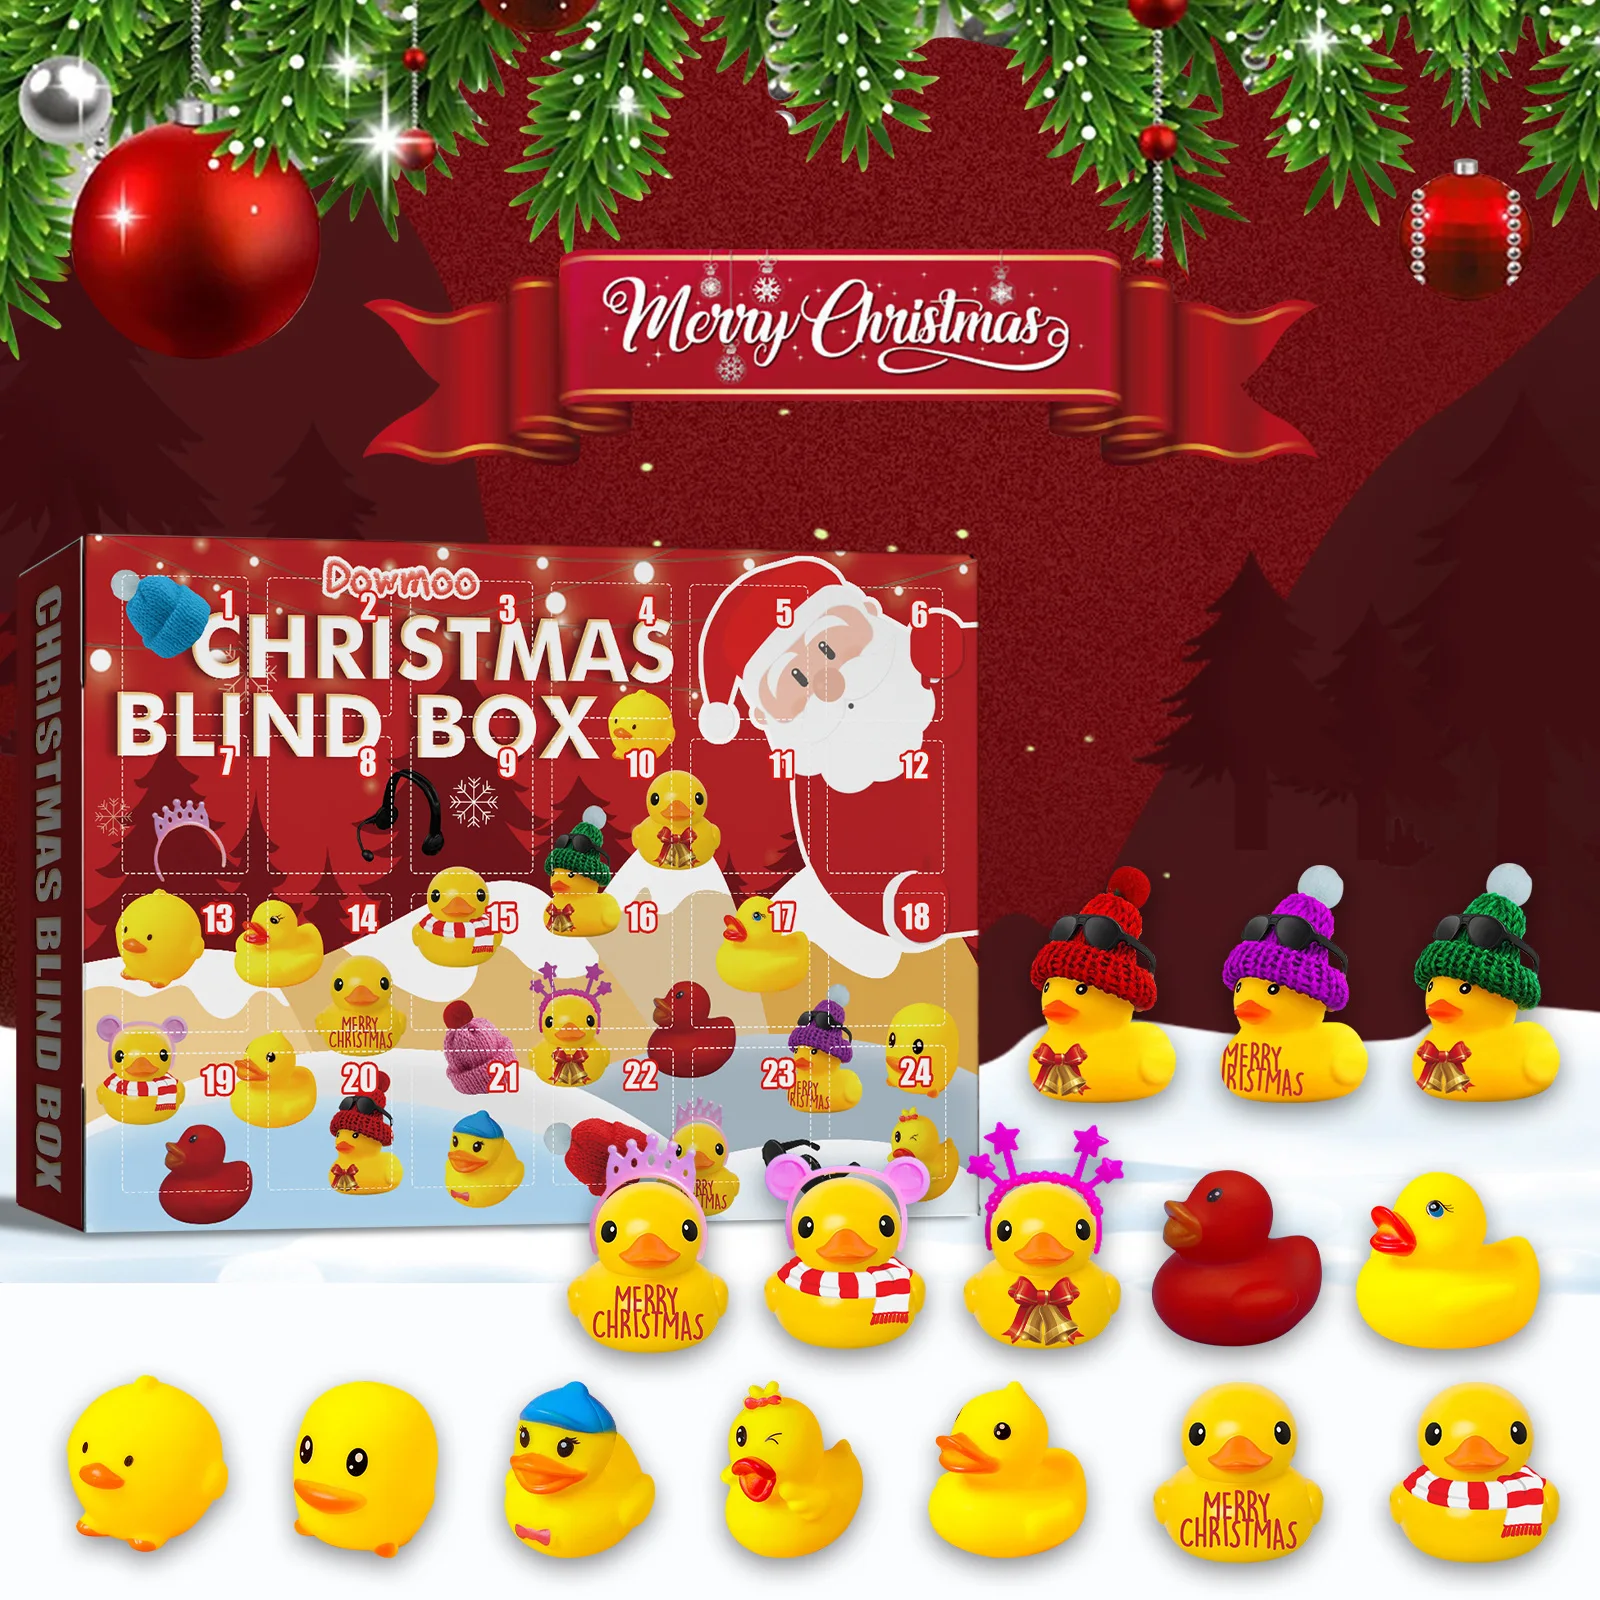 Noel Kauçuk oyuncak ördek Kılıfları Yaratıcı Noel Geri Sayım Takvim Kör Kutu Noel Kauçuk Ördek Yavrusu Hediye Kutuları Yeni Yıl Hediye